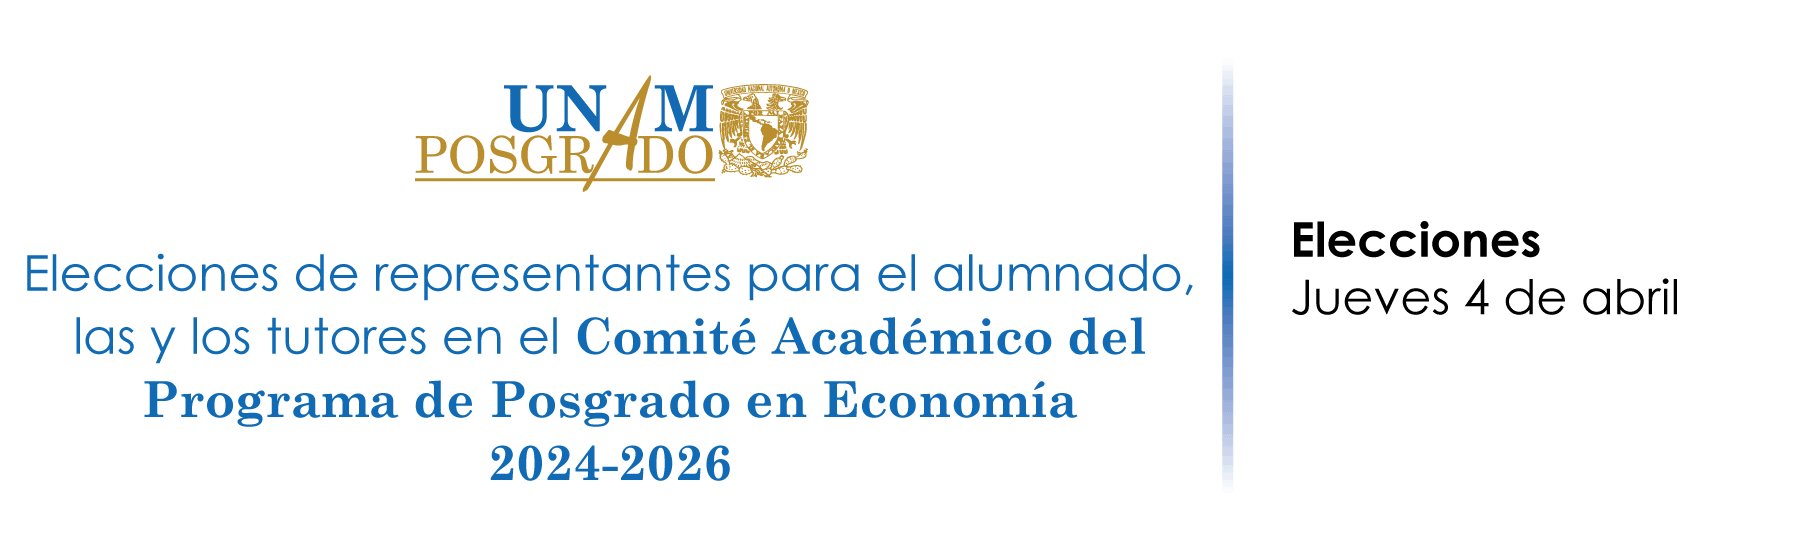 Elecciones de representantes para el alumnado, las y los tutores en el Comité Académico del Programa de Posgrado en Economía, 2024-2026